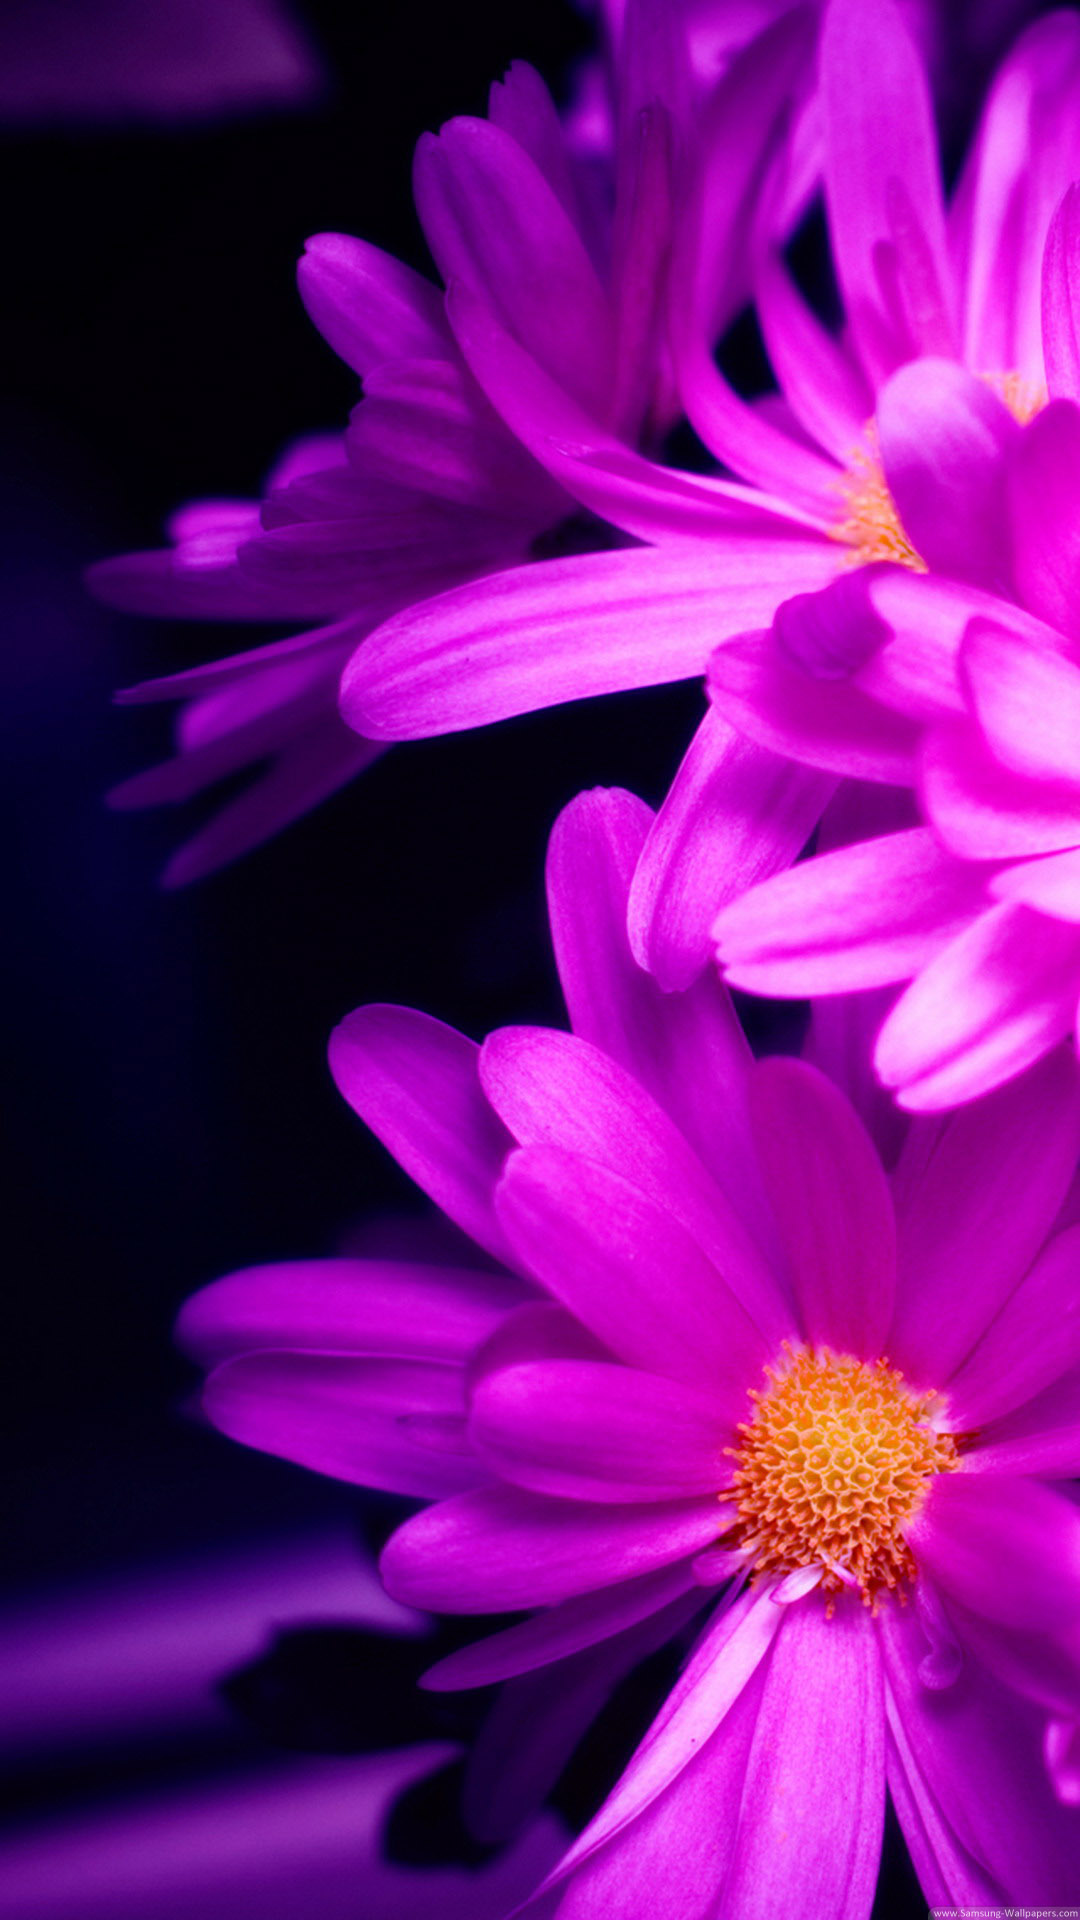 sfondo gratuito per iphone 6 plus,pianta fiorita,petalo,fiore,viola,viola